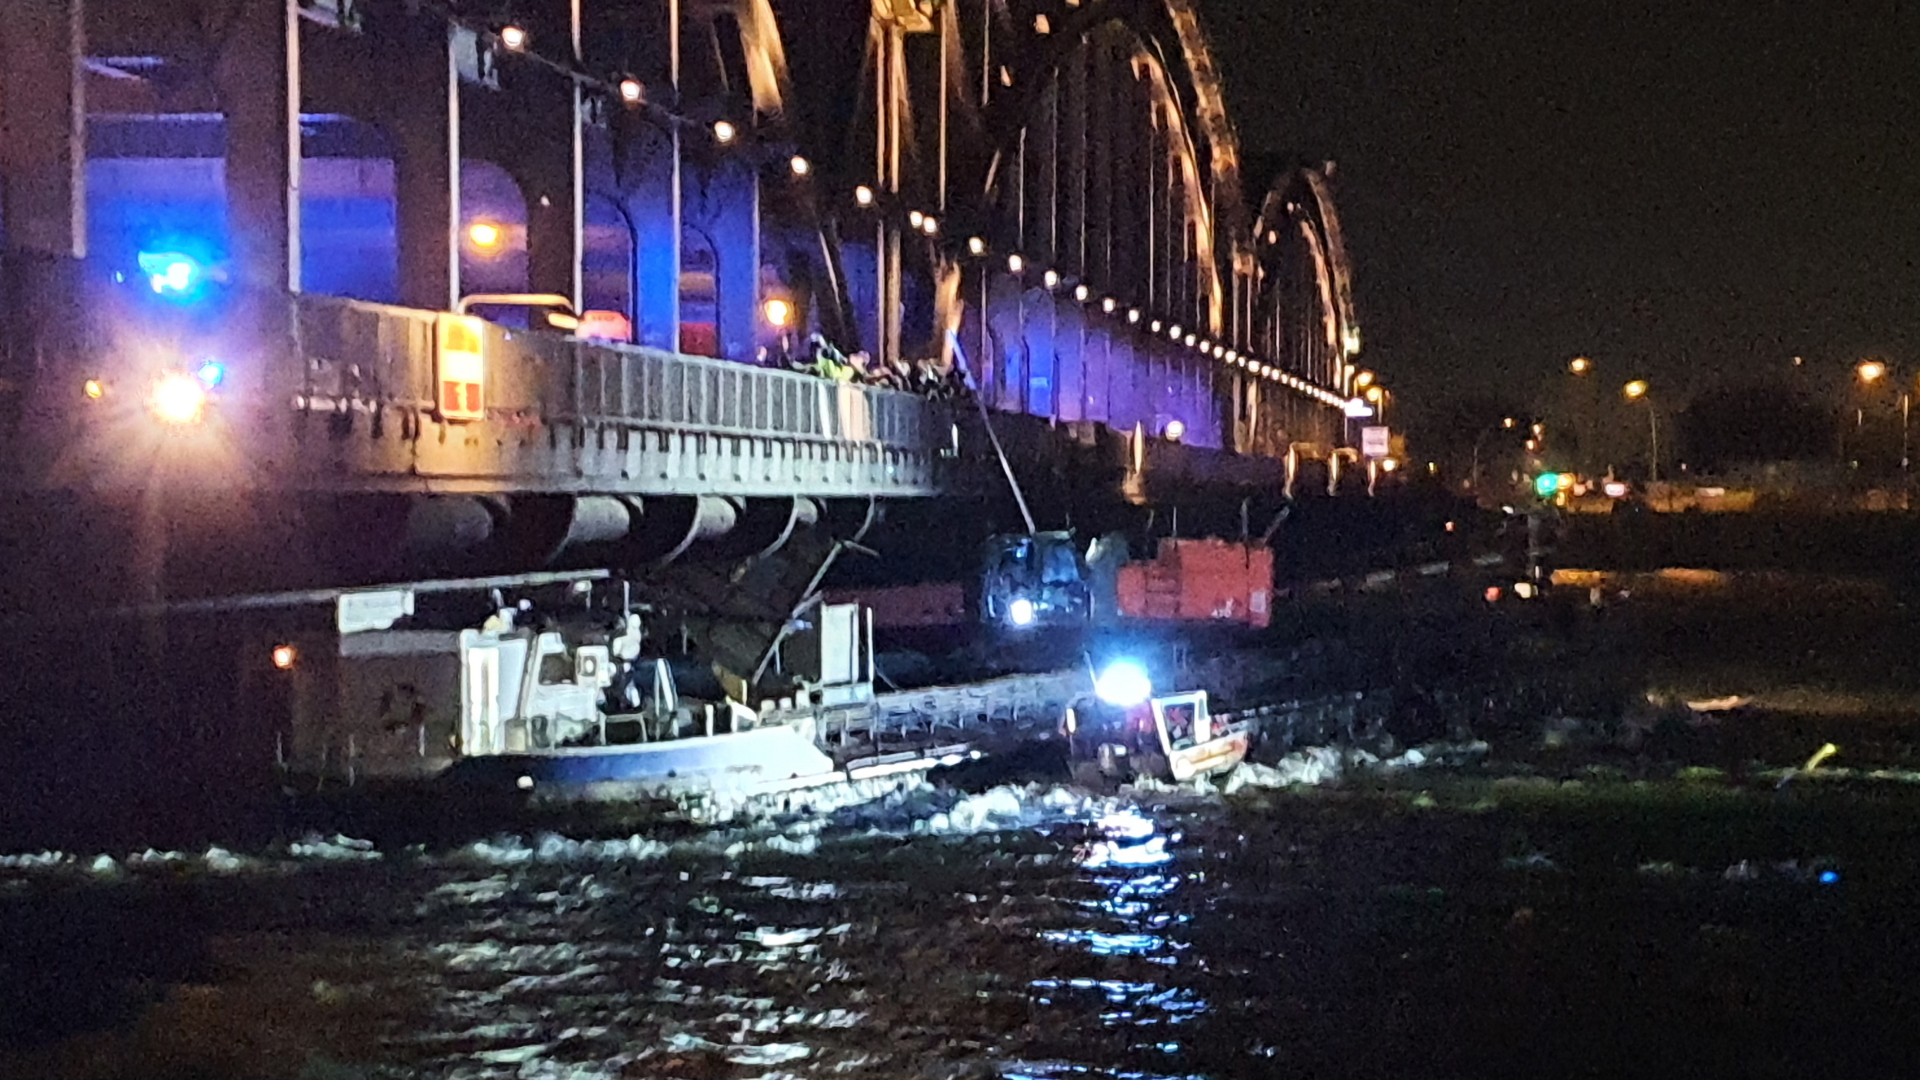 Einsatzkräfte der Polizei und Feuerwehr kommen zu einem Unfallort, nachdem sich ein Binnenschiff unter einer Brücke in Hamburg festgefahren hat. | dpa